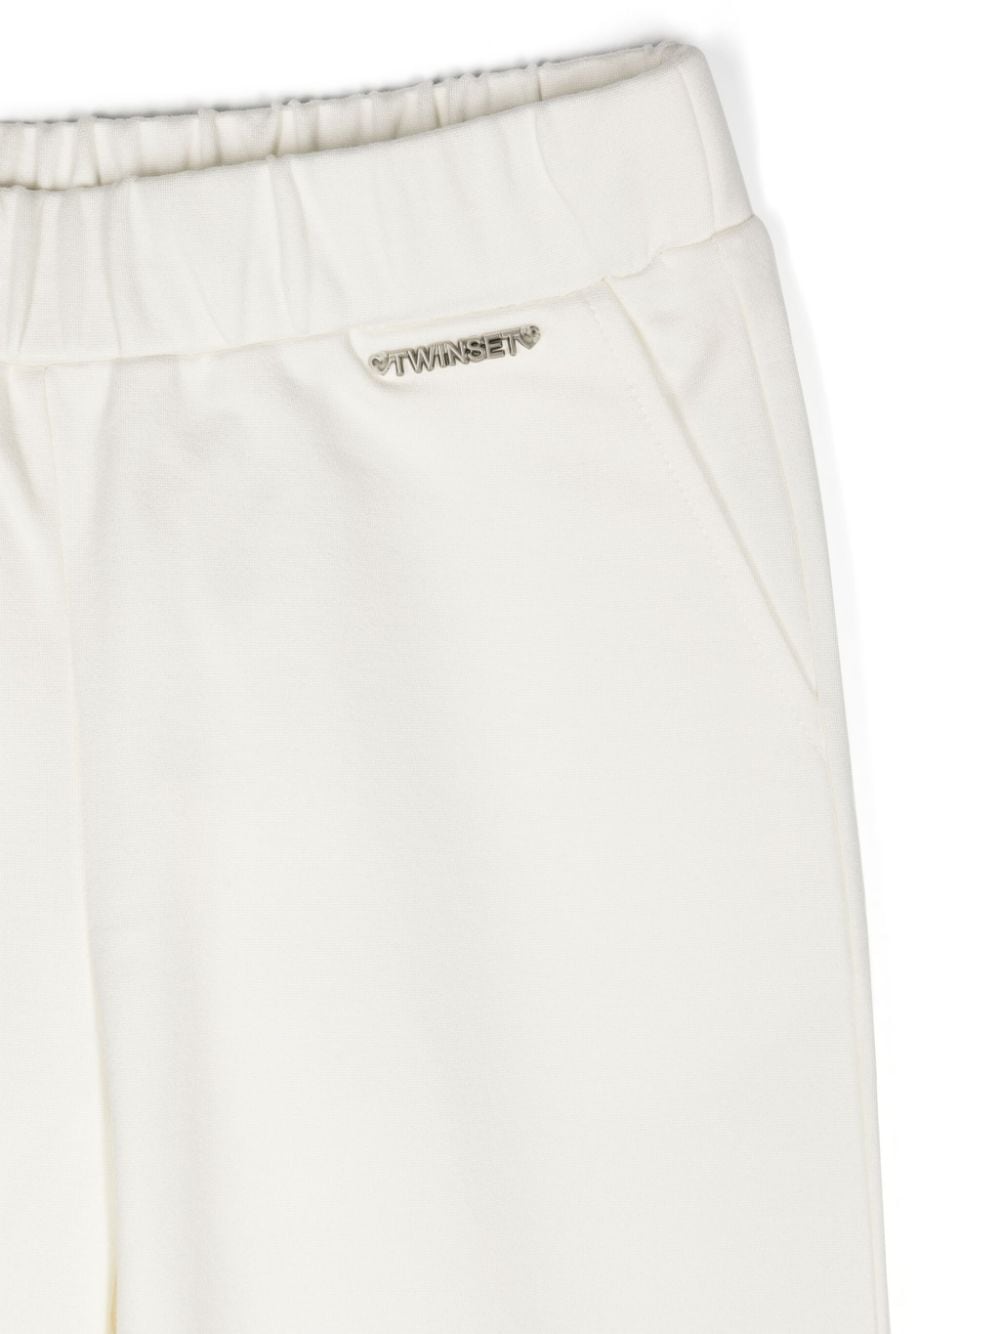 Pantalone per bambina in cotone bianco